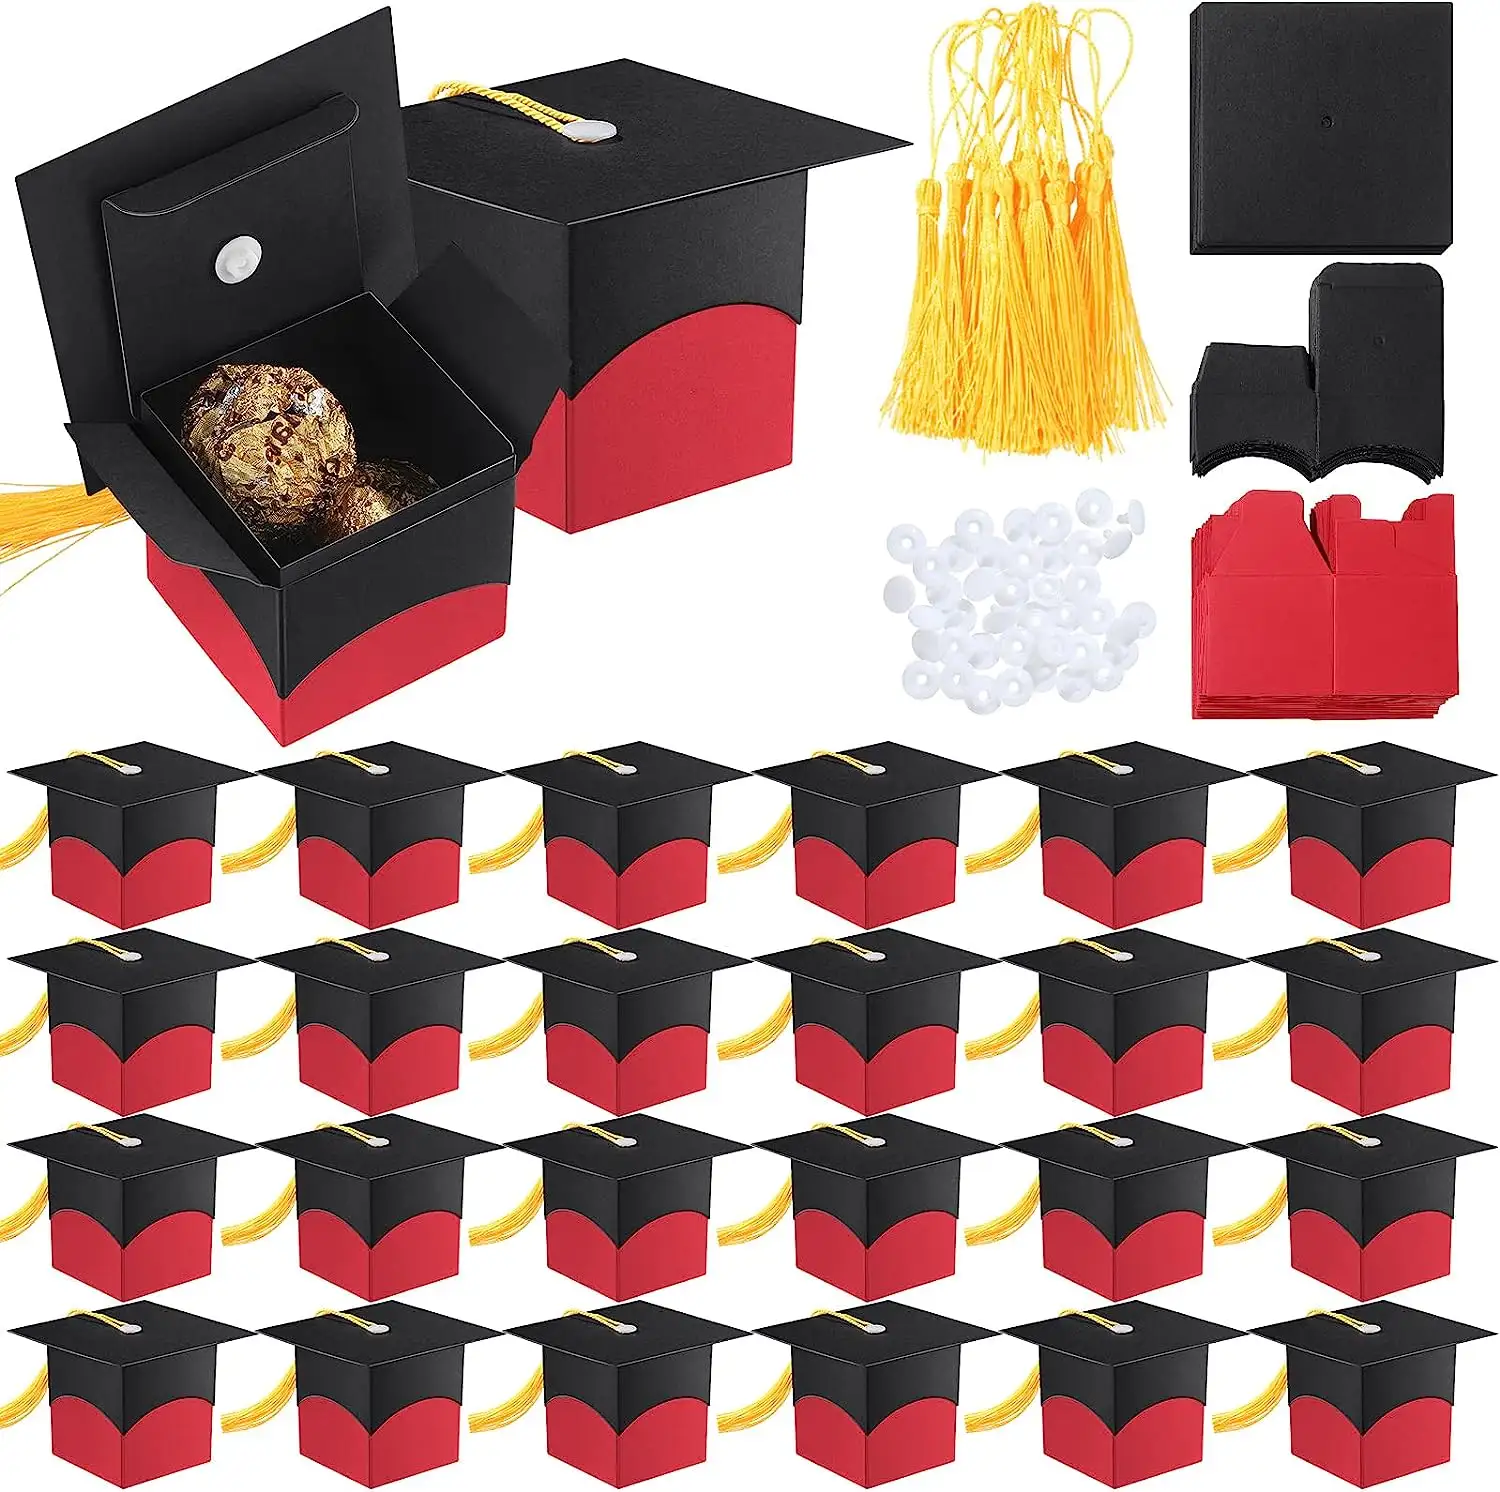 Kırmızı mezuniyet partisi şeker kutusu mezuniyet töreni için püsküller hatıra şeker kutusu ile mezuniyet kap hediye kutusu yanadır